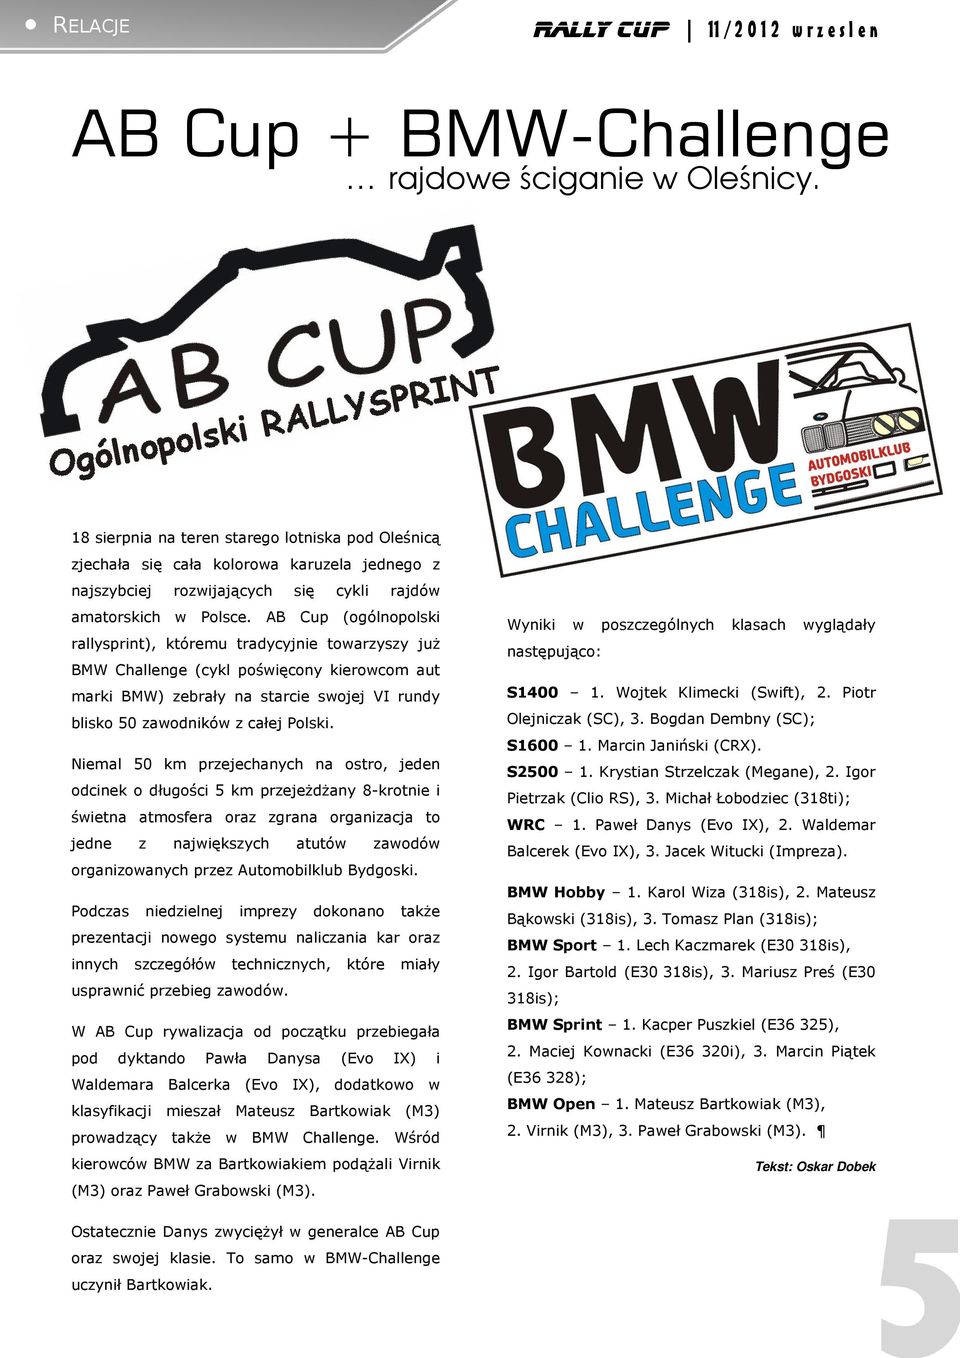 AB Cup (ogólnopolski rallysprint), któremu tradycyjnie towarzyszy już BMW Challenge (cykl poświęcony kierowcom aut marki BMW) zebrały na starcie swojej VI rundy blisko 50 zawodników z całej Polski.